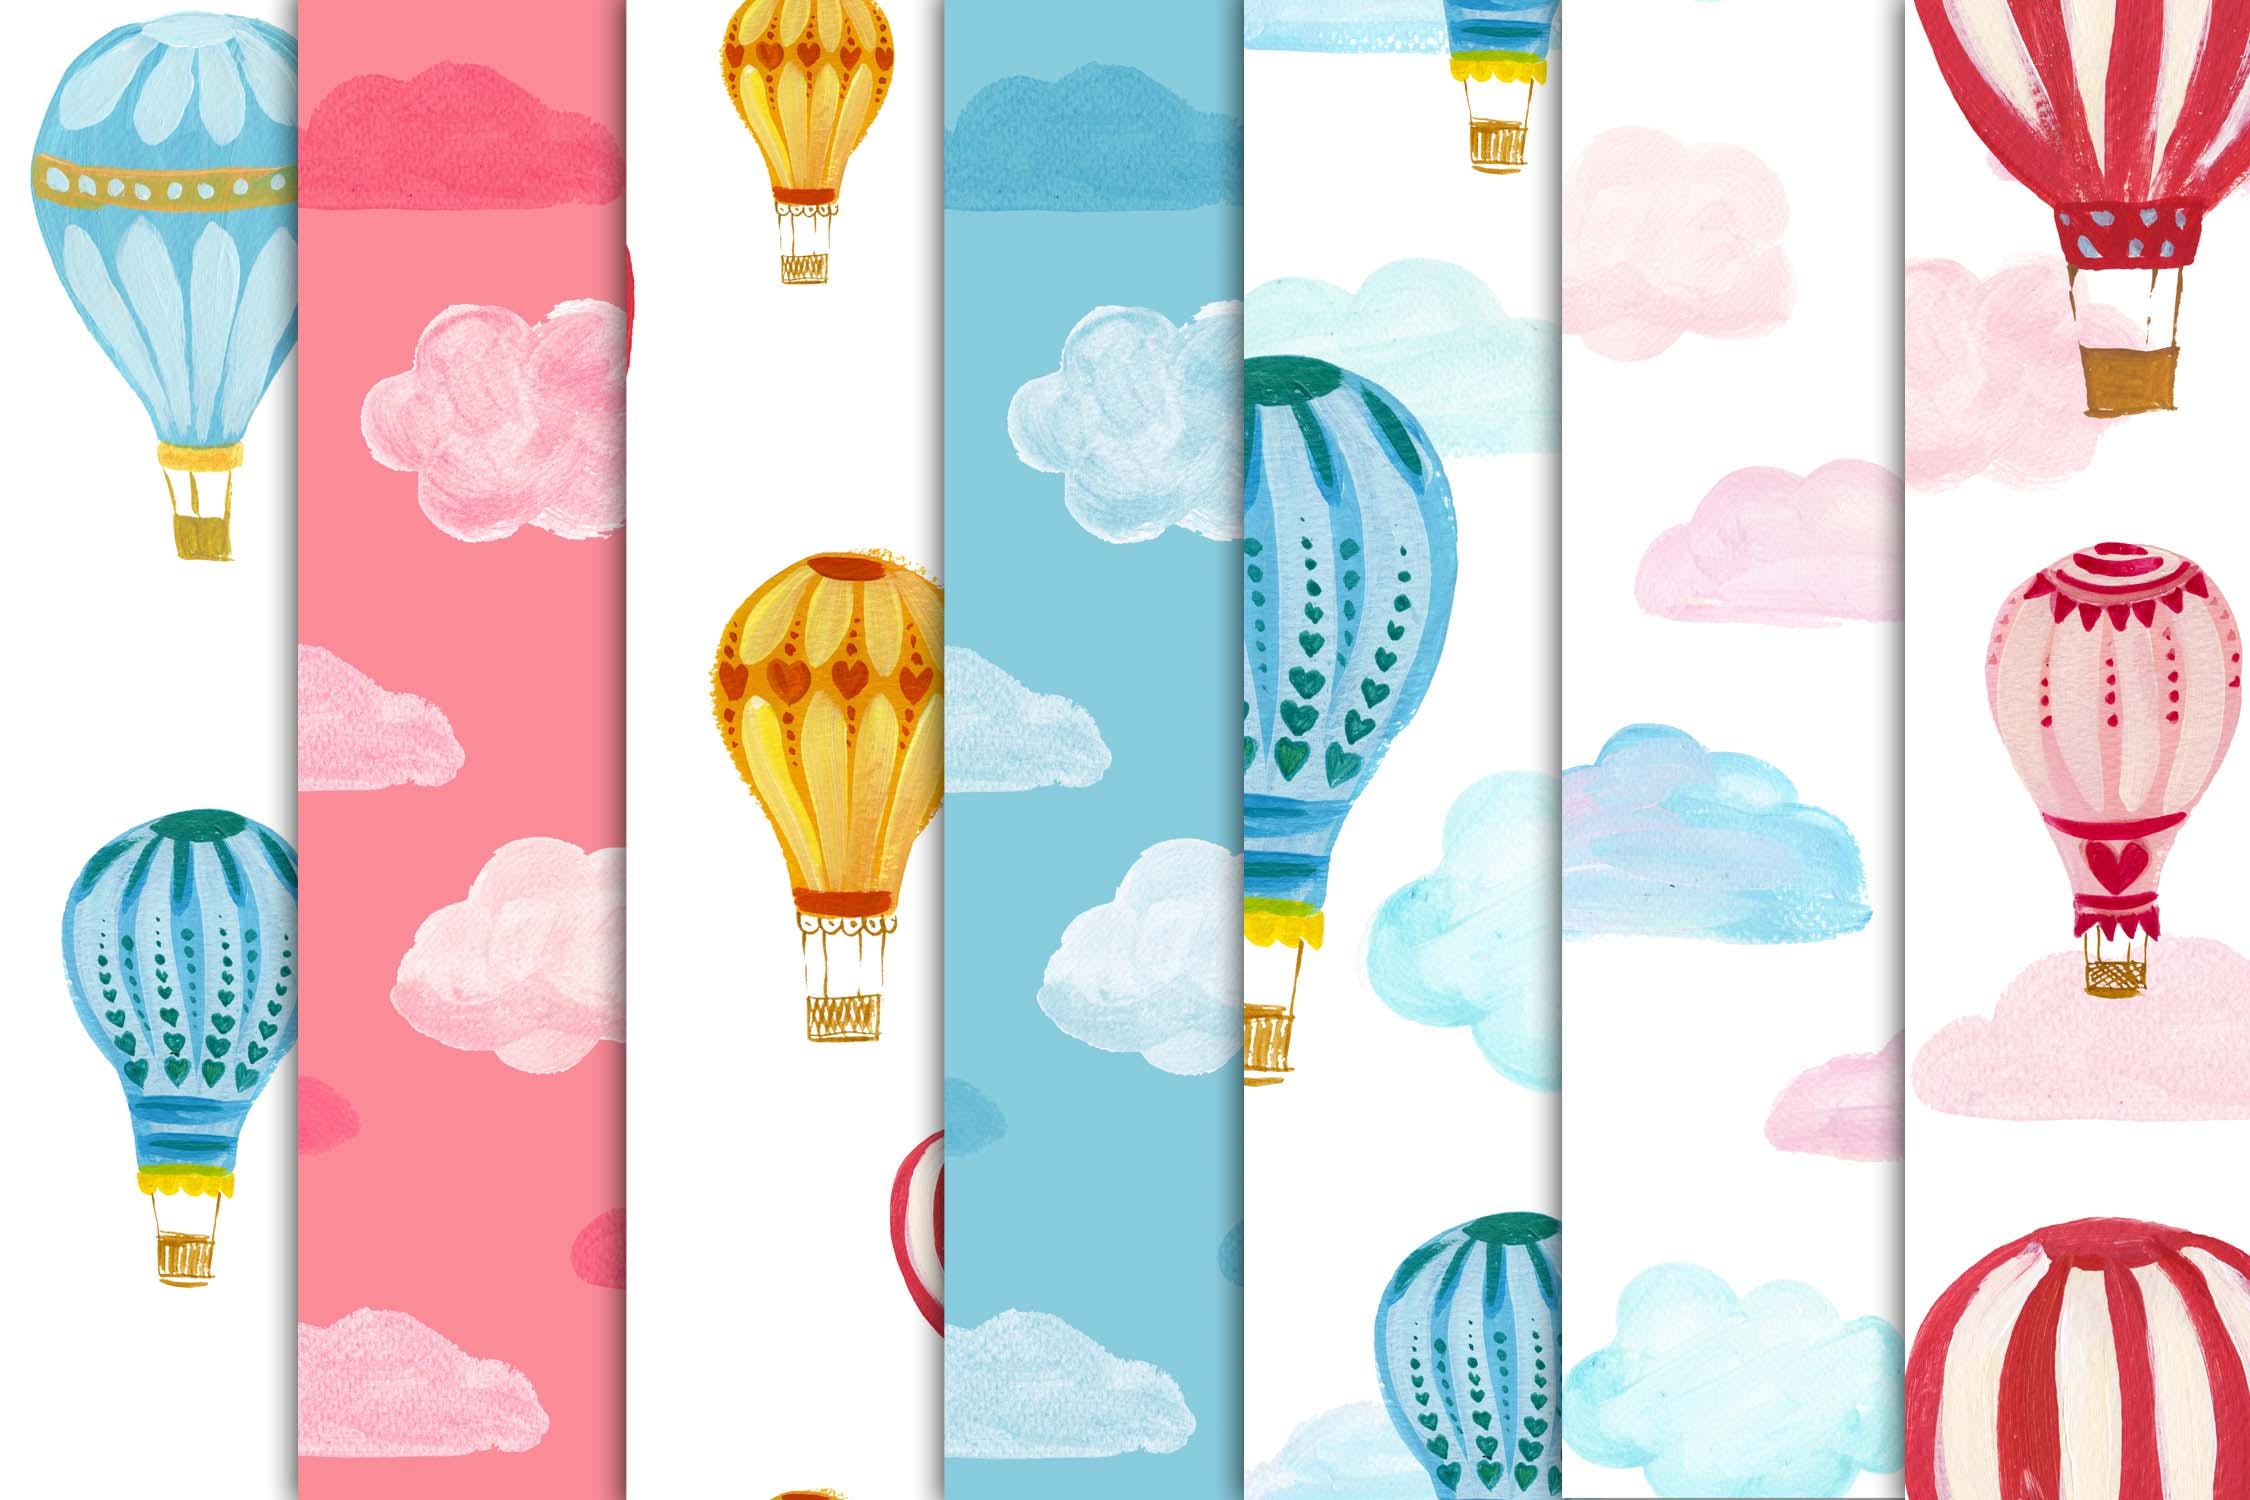 热气球剪贴画和图案集 Hot Air Balloons clipart & pattern set 图片素材 第3张